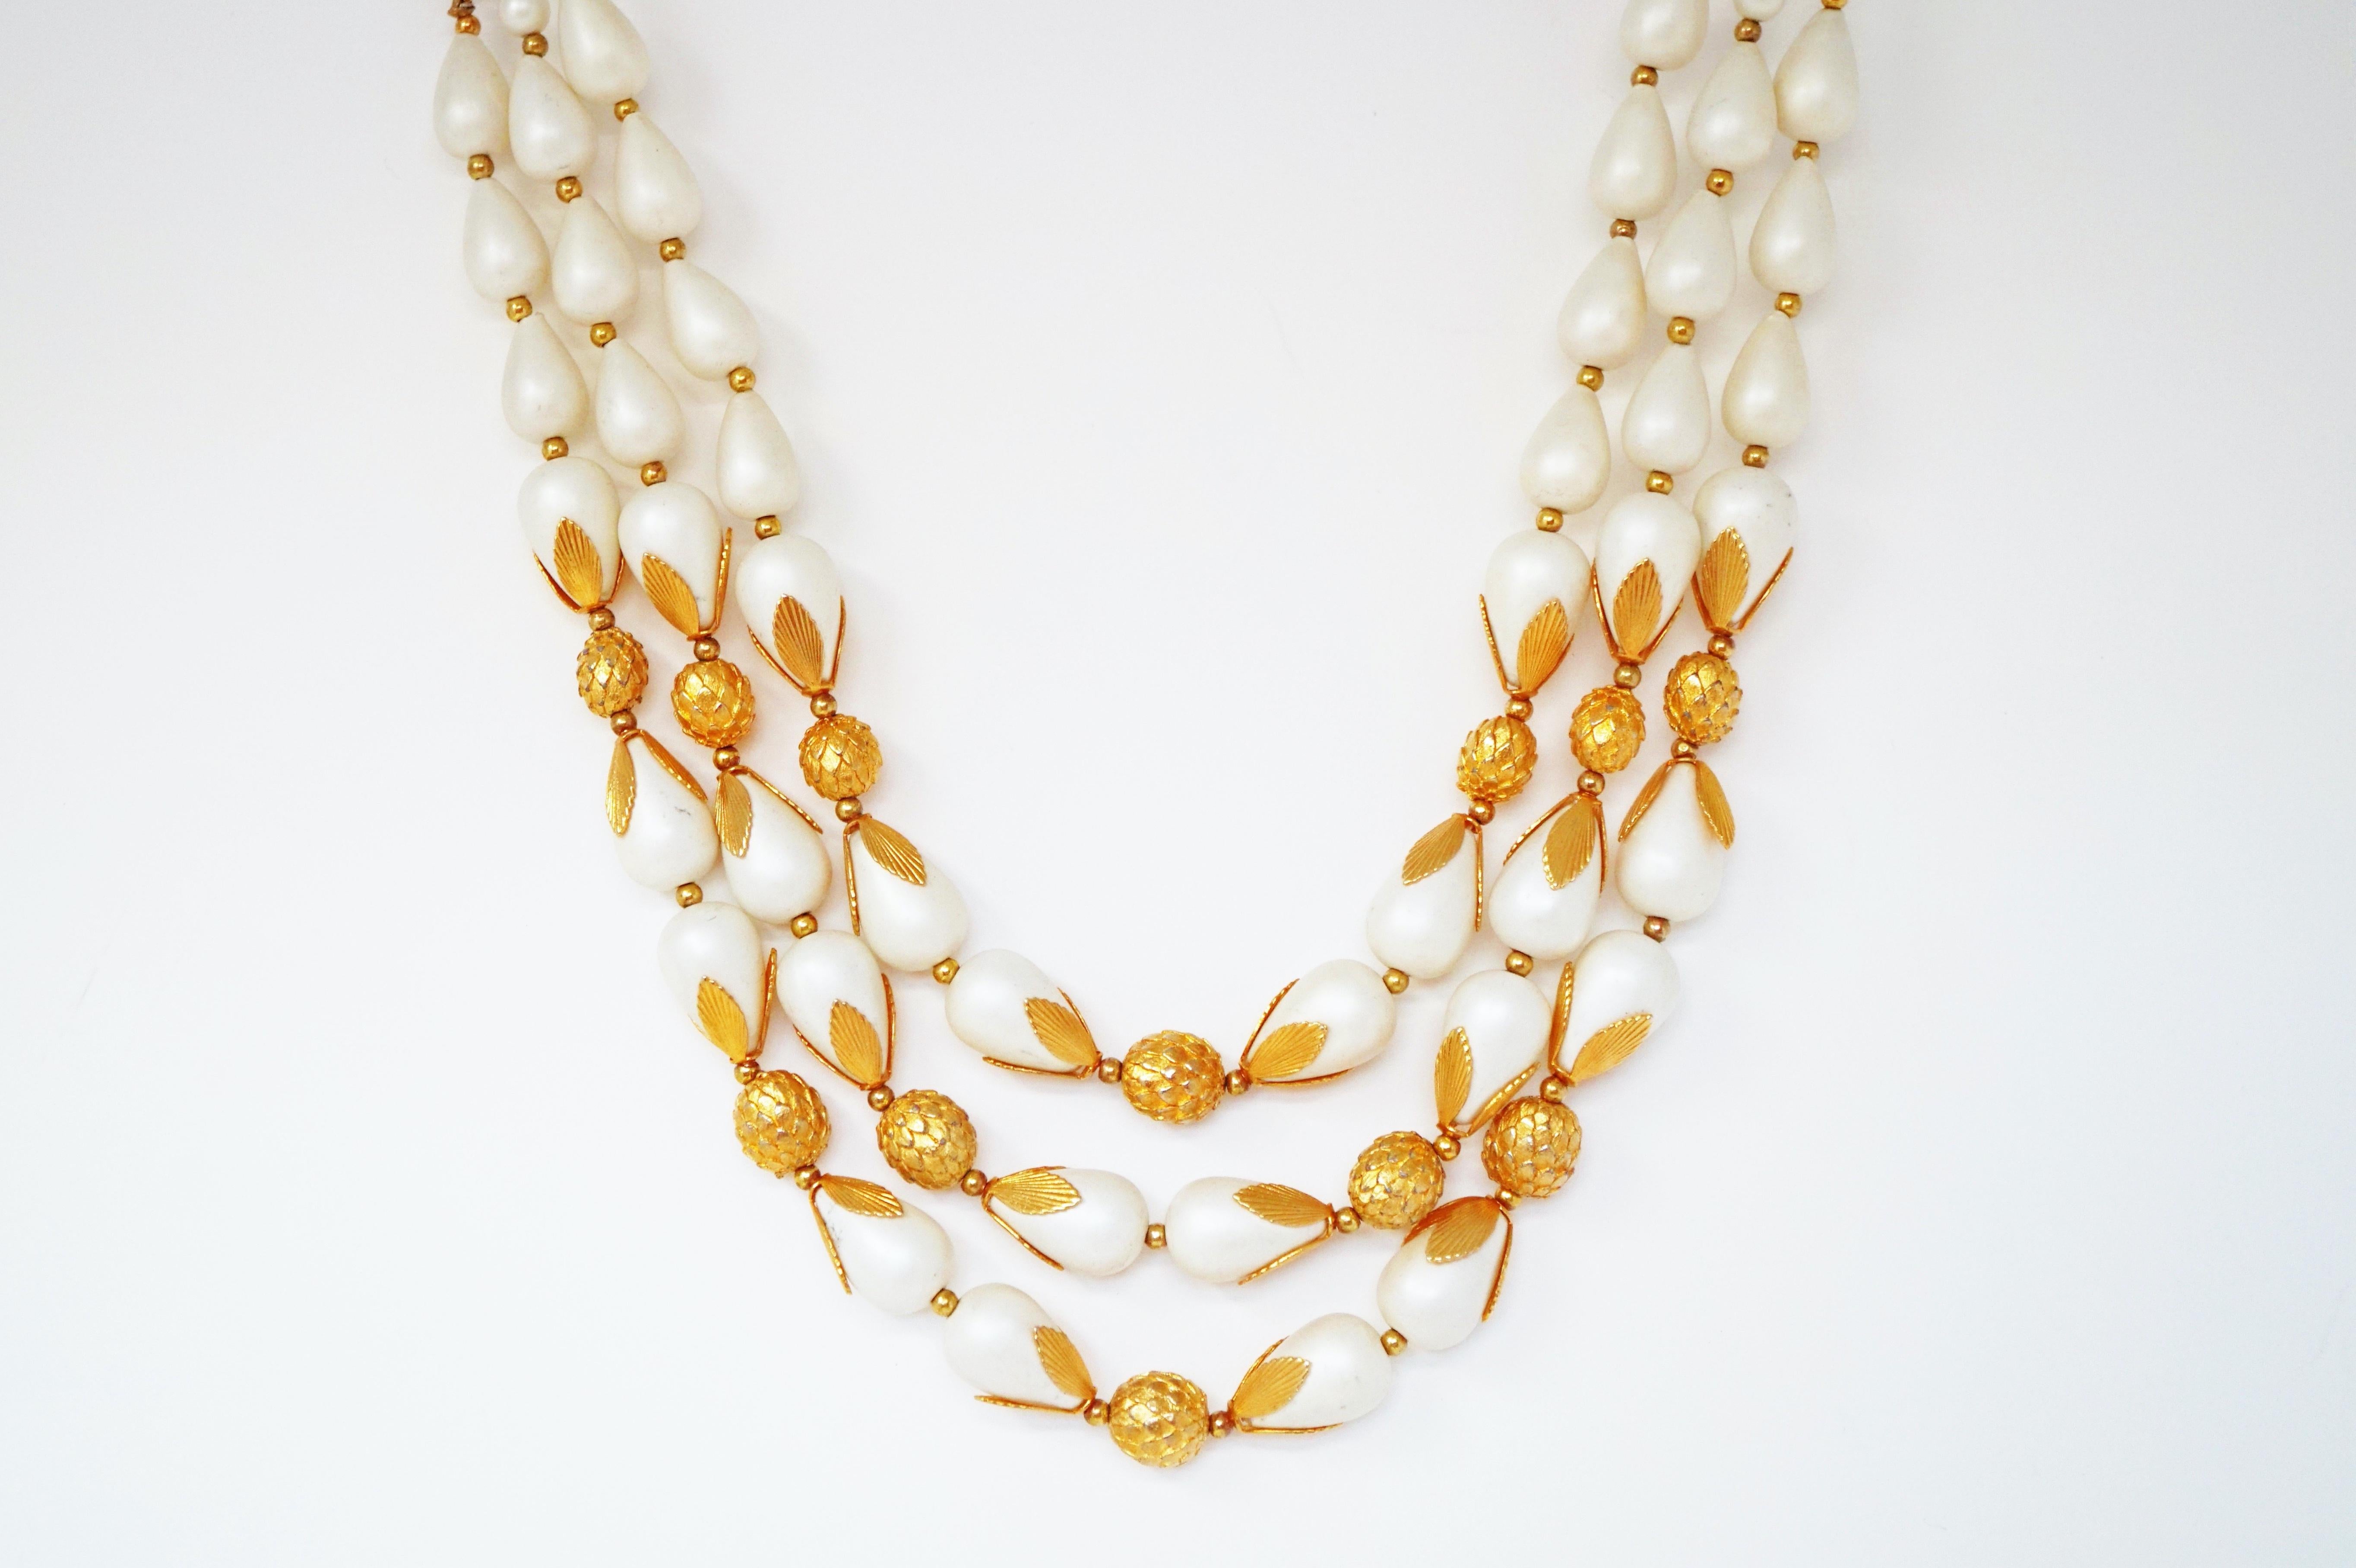 Diese wunderschöne dreireihige Halskette von Deauville aus der Zeit um 1950 ist ein elegantes Stück Modeschmuckgeschichte.  Dieses Schmuckstück eignet sich perfekt für die Abendgarderobe und ist eine wunderbare Ergänzung für eine gehobene